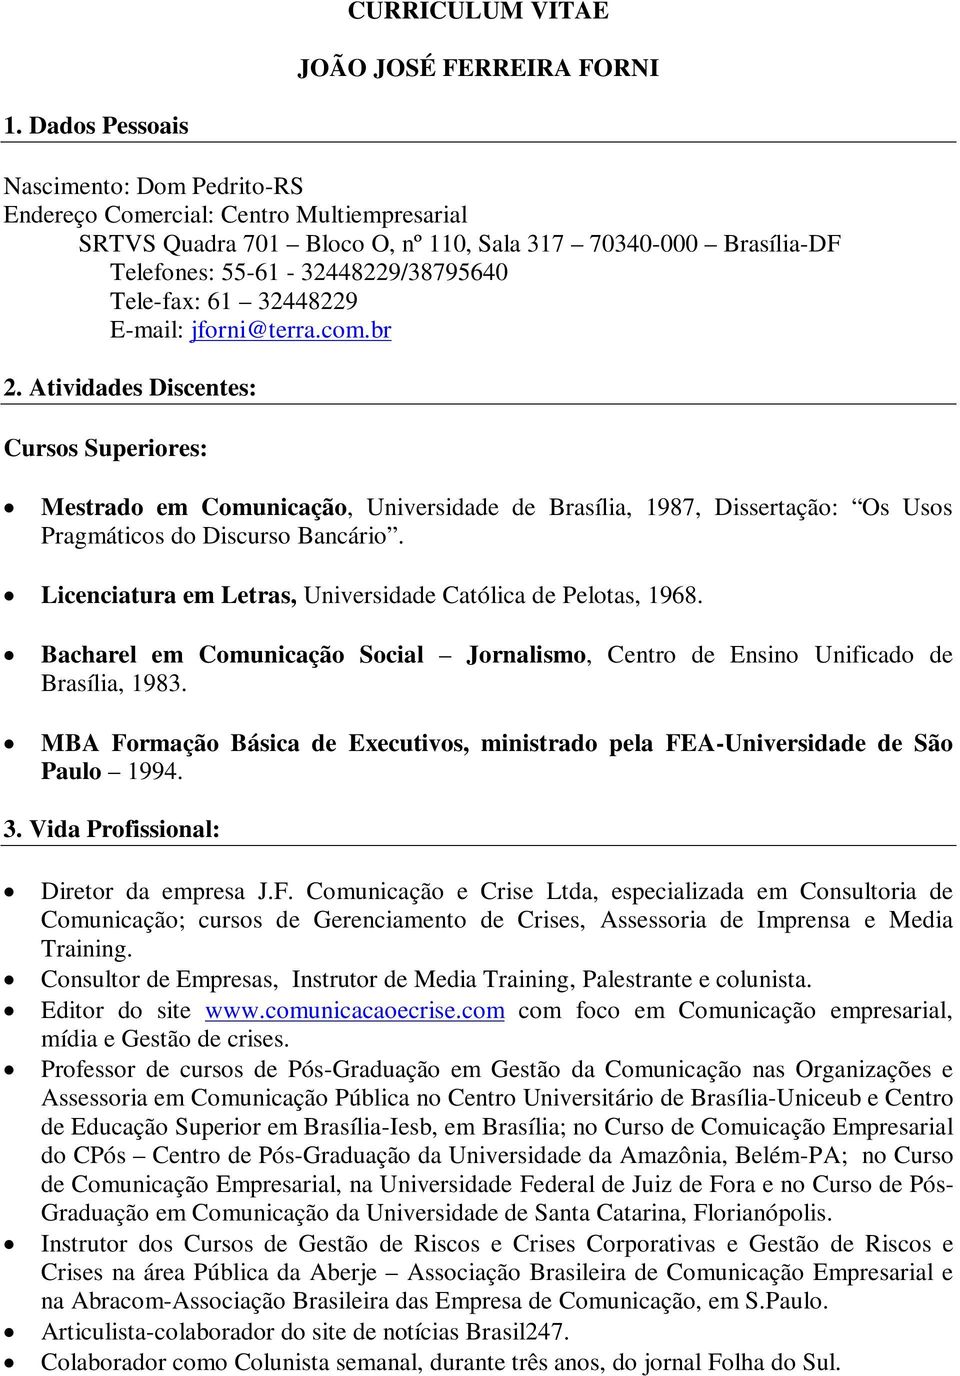 61 32448229 E-mail: jforni@terra.com.br 2. Atividades Discentes: Cursos Superiores: Mestrado em Comunicação, Universidade de Brasília, 1987, Dissertação: Os Usos Pragmáticos do Discurso Bancário.